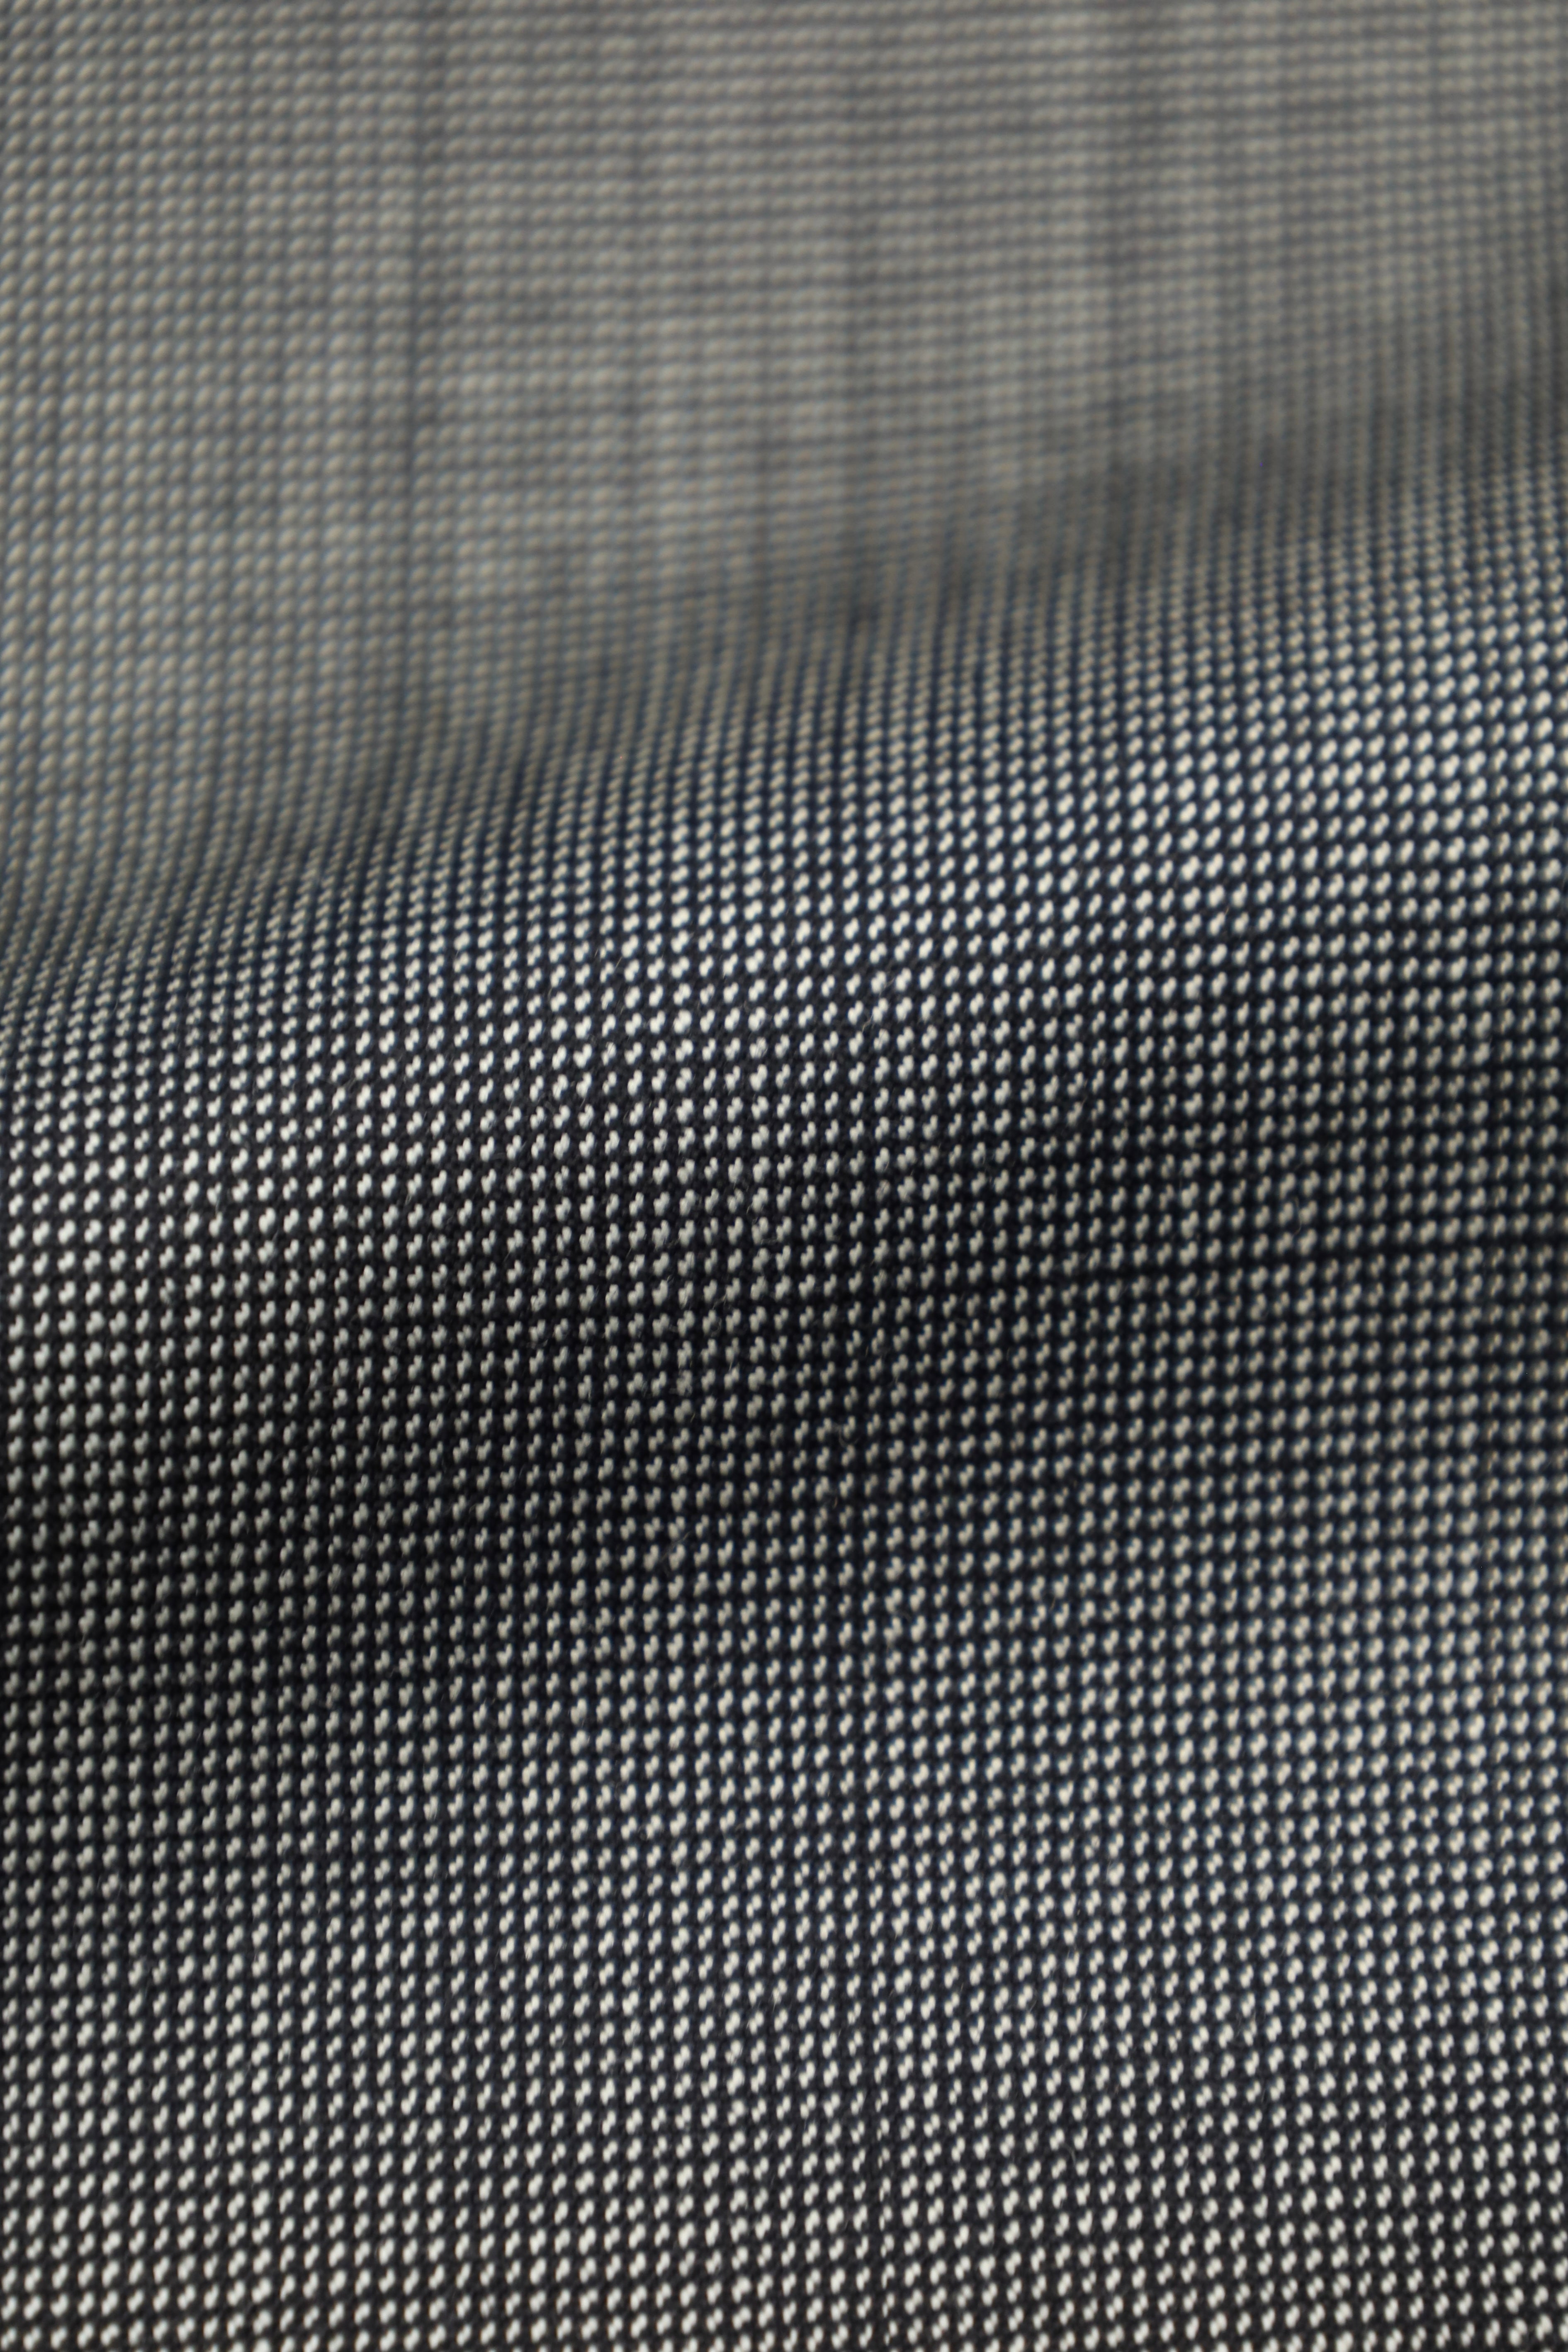 Cesare Attolini Grey Super 150's Birdseye Suit